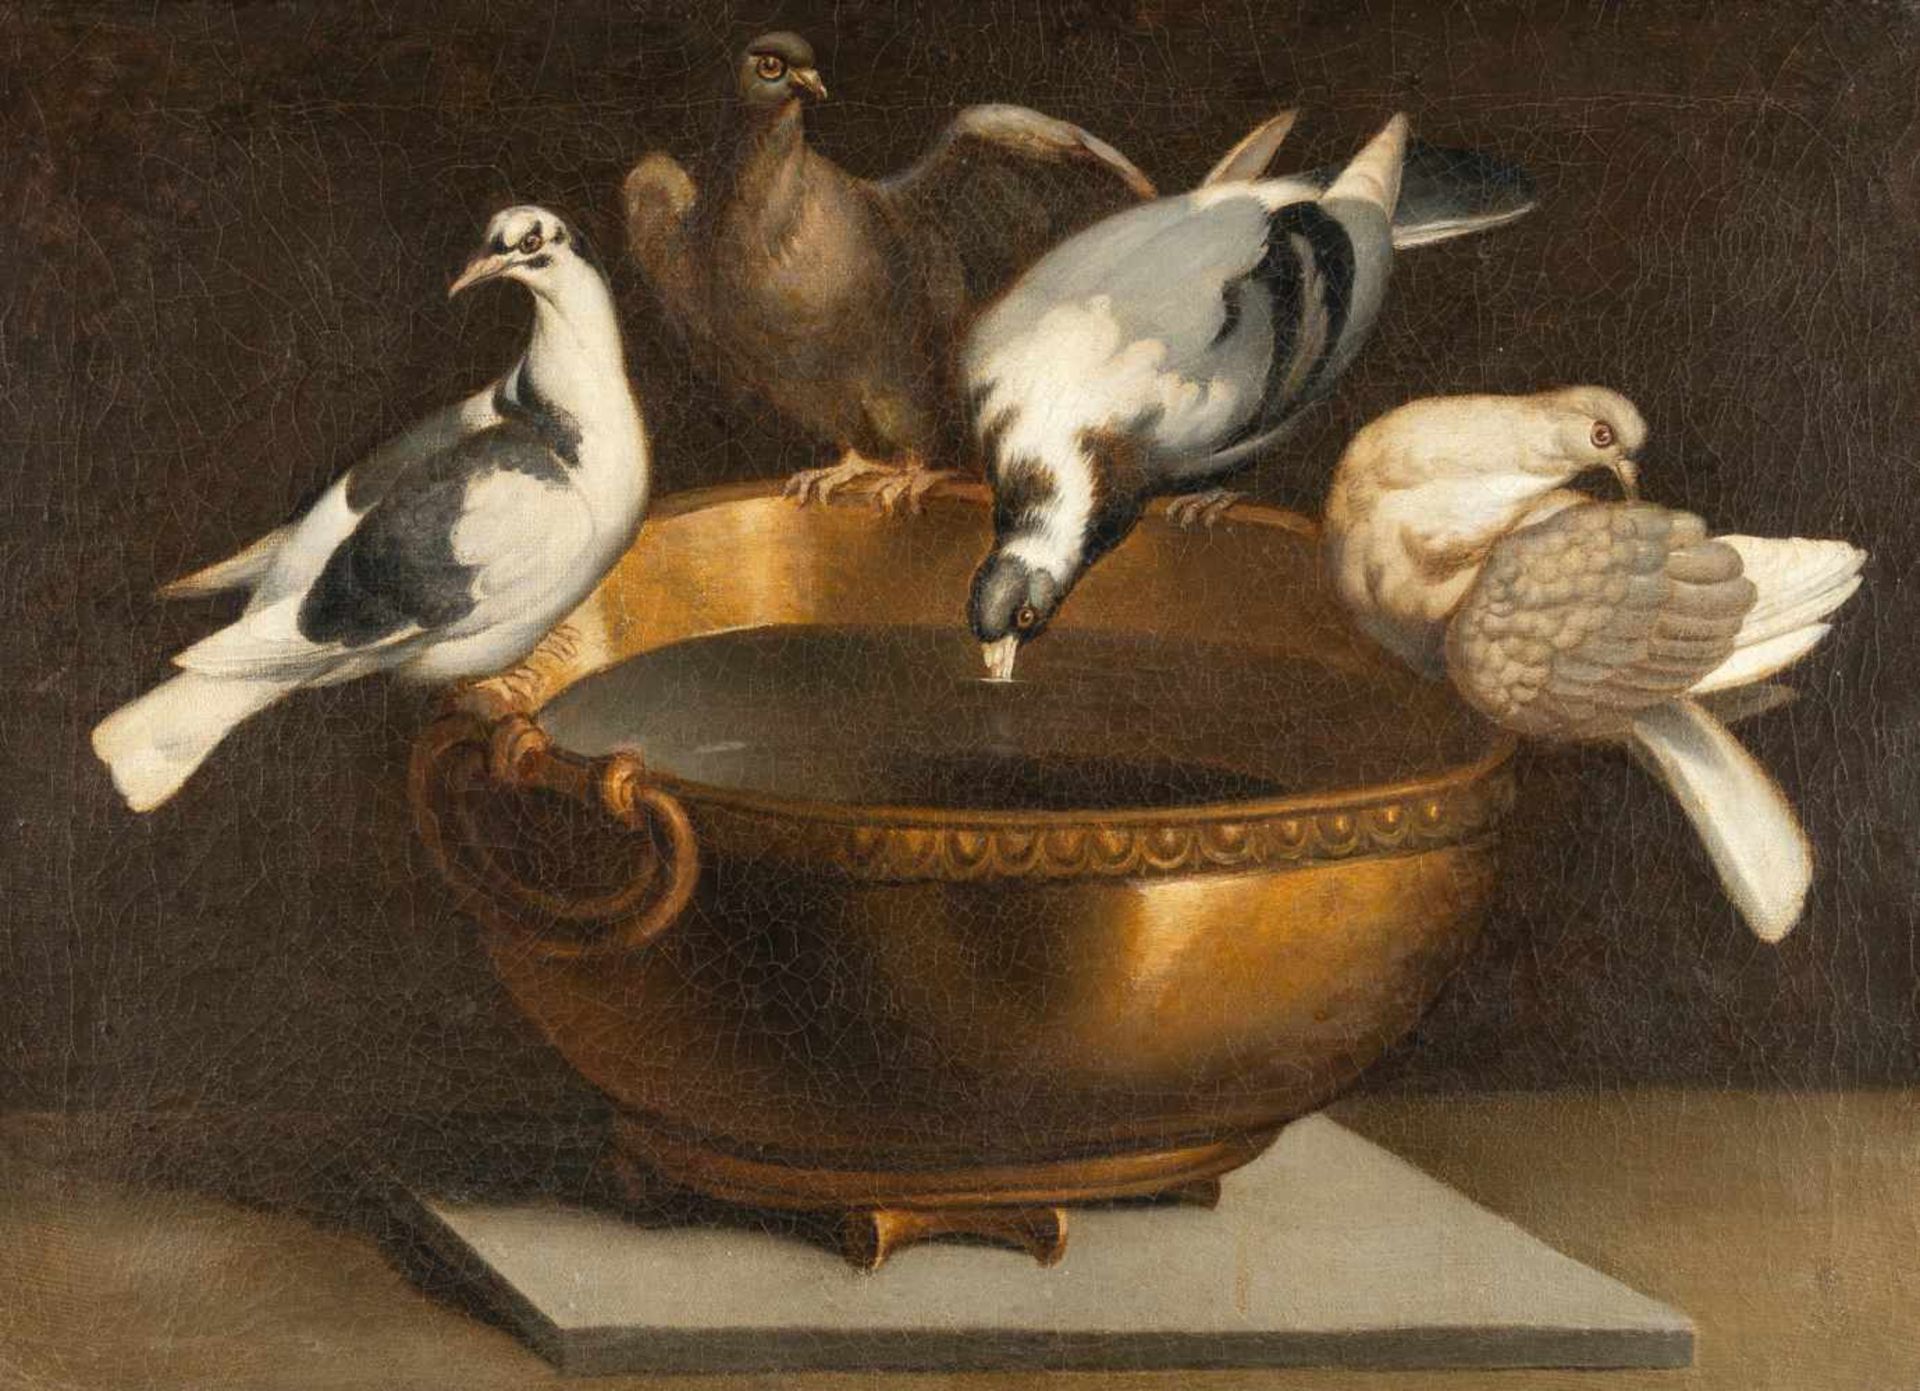 ItalienischVier Tauben auf einem Kupferkessel (Tauben des Plinius)Öl auf Leinwand, doubliert. (2.